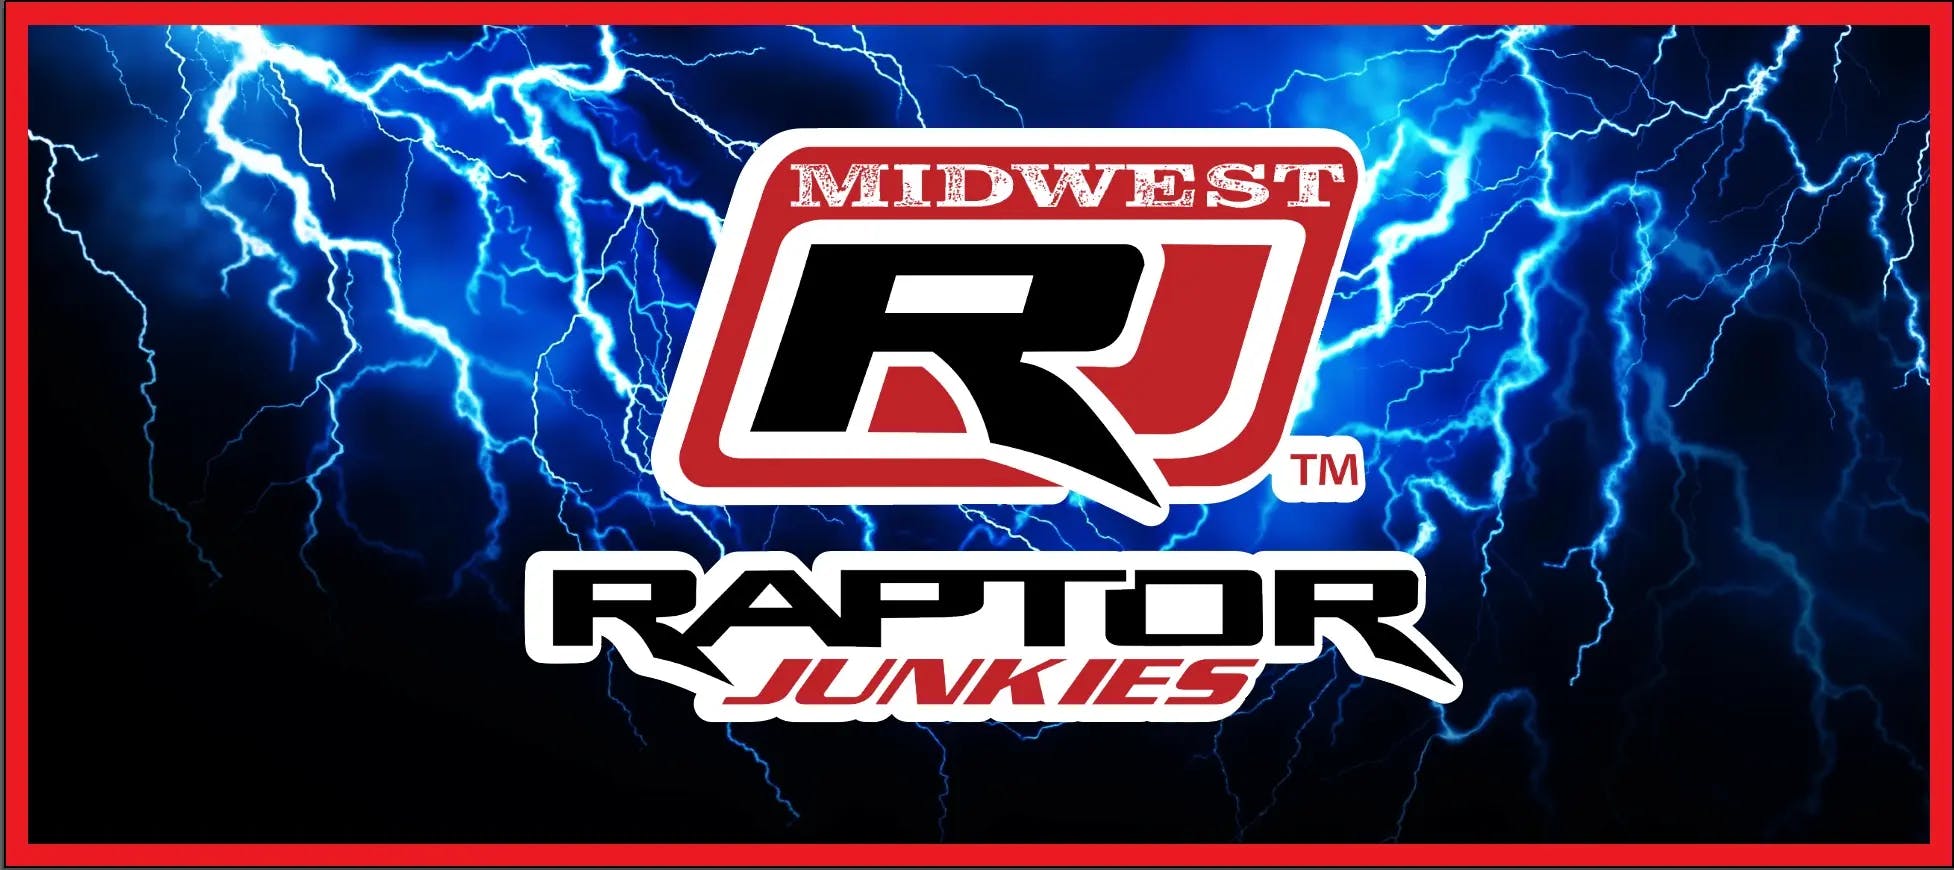 Midwest Raptor Junkies